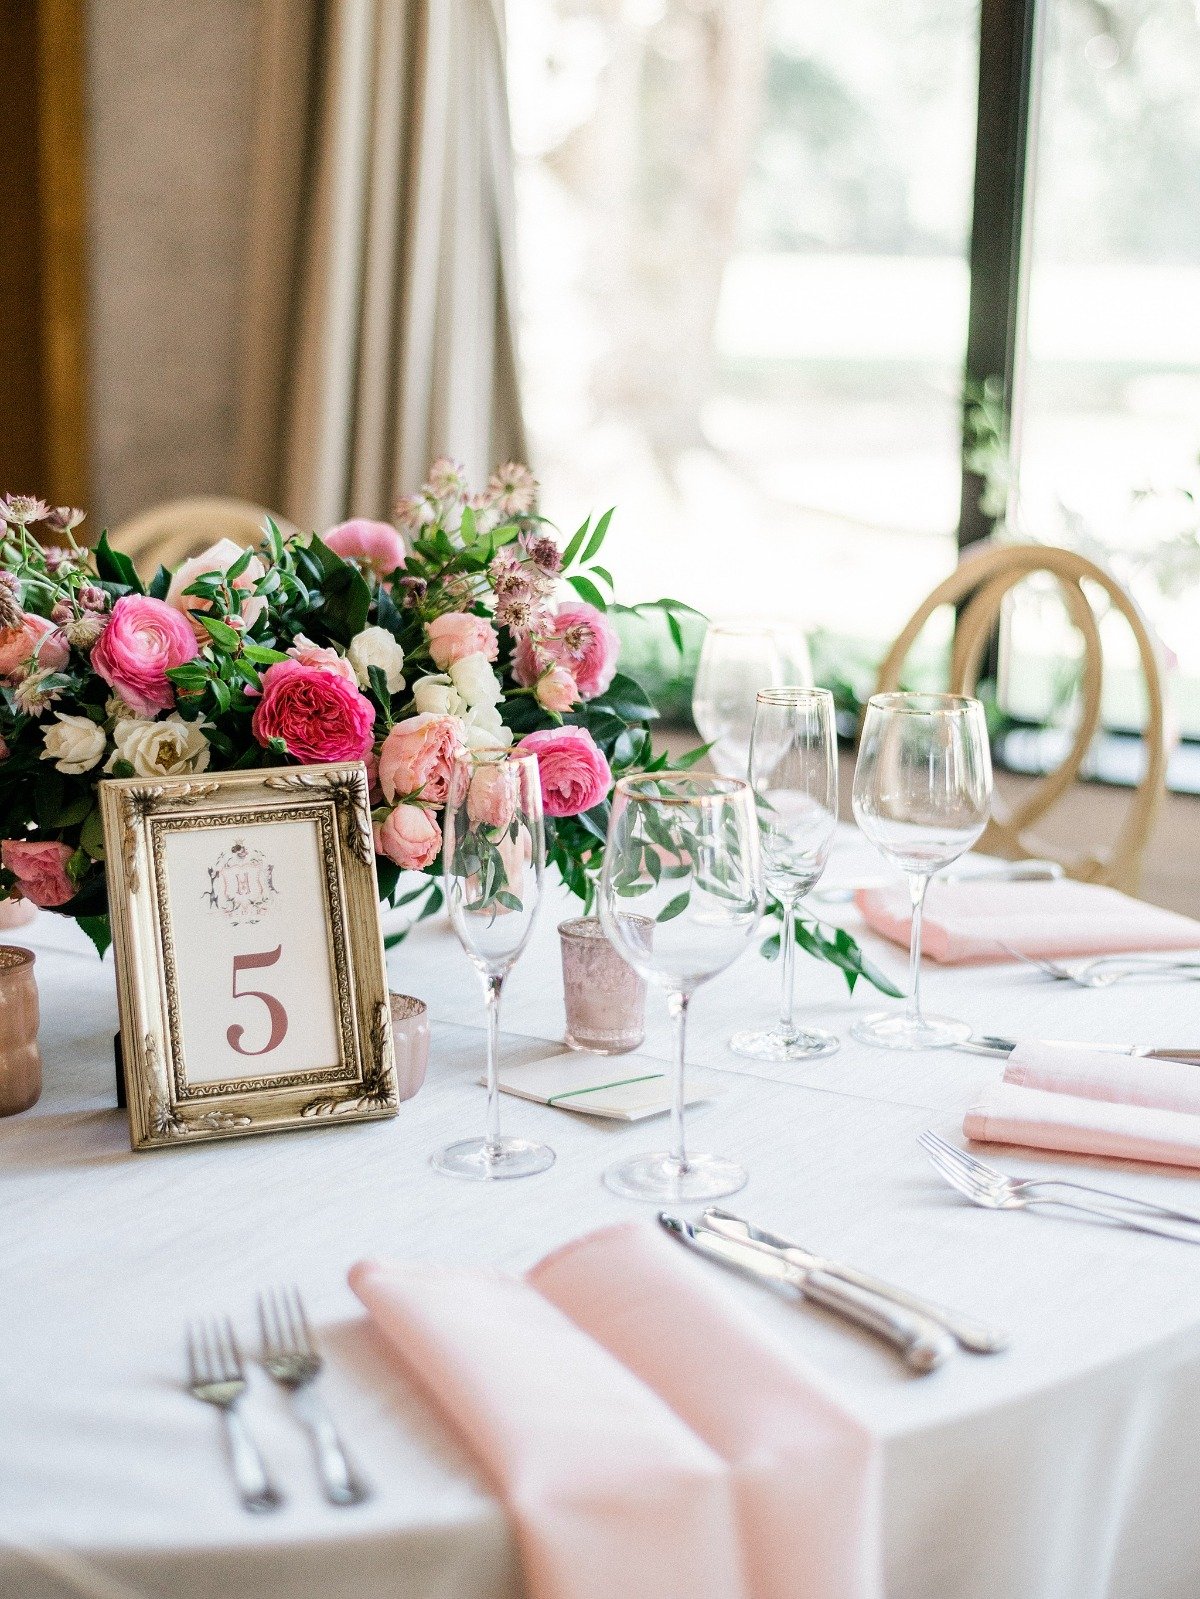 Elegant blush table decor for a wedding